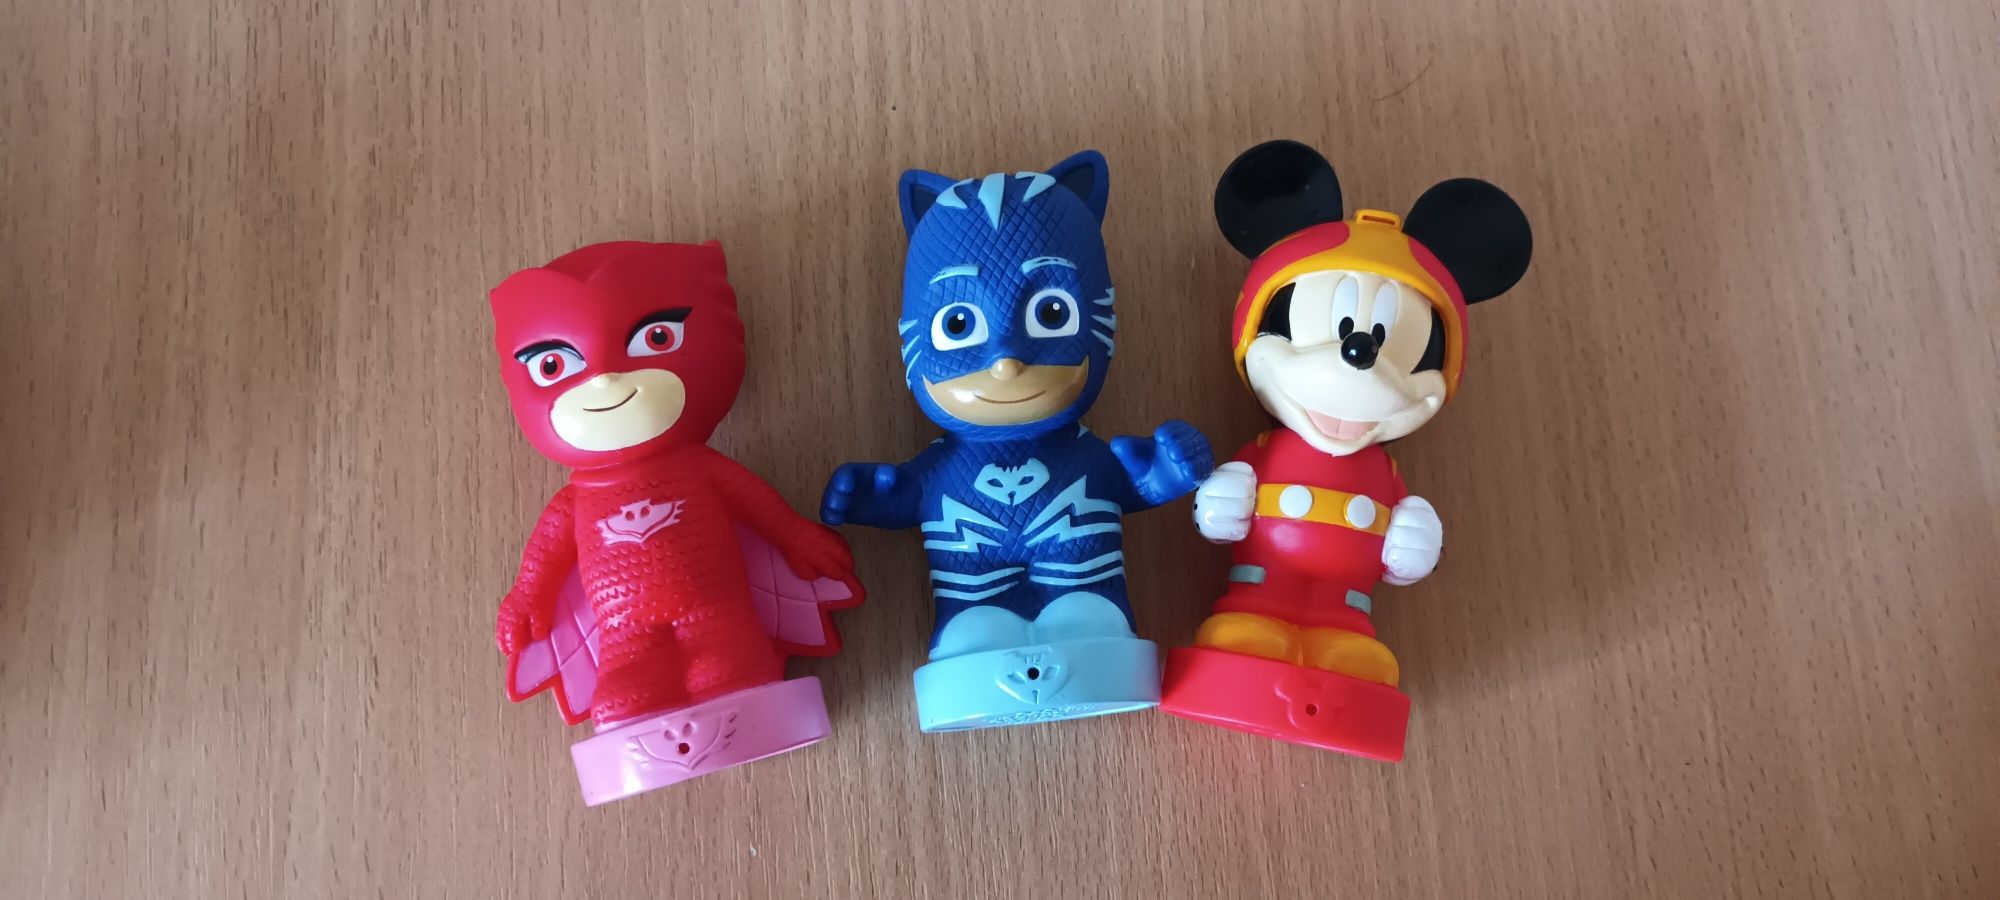 Figurine de jucarie PJMASKS eroi in pijamale si Mickey Mouse